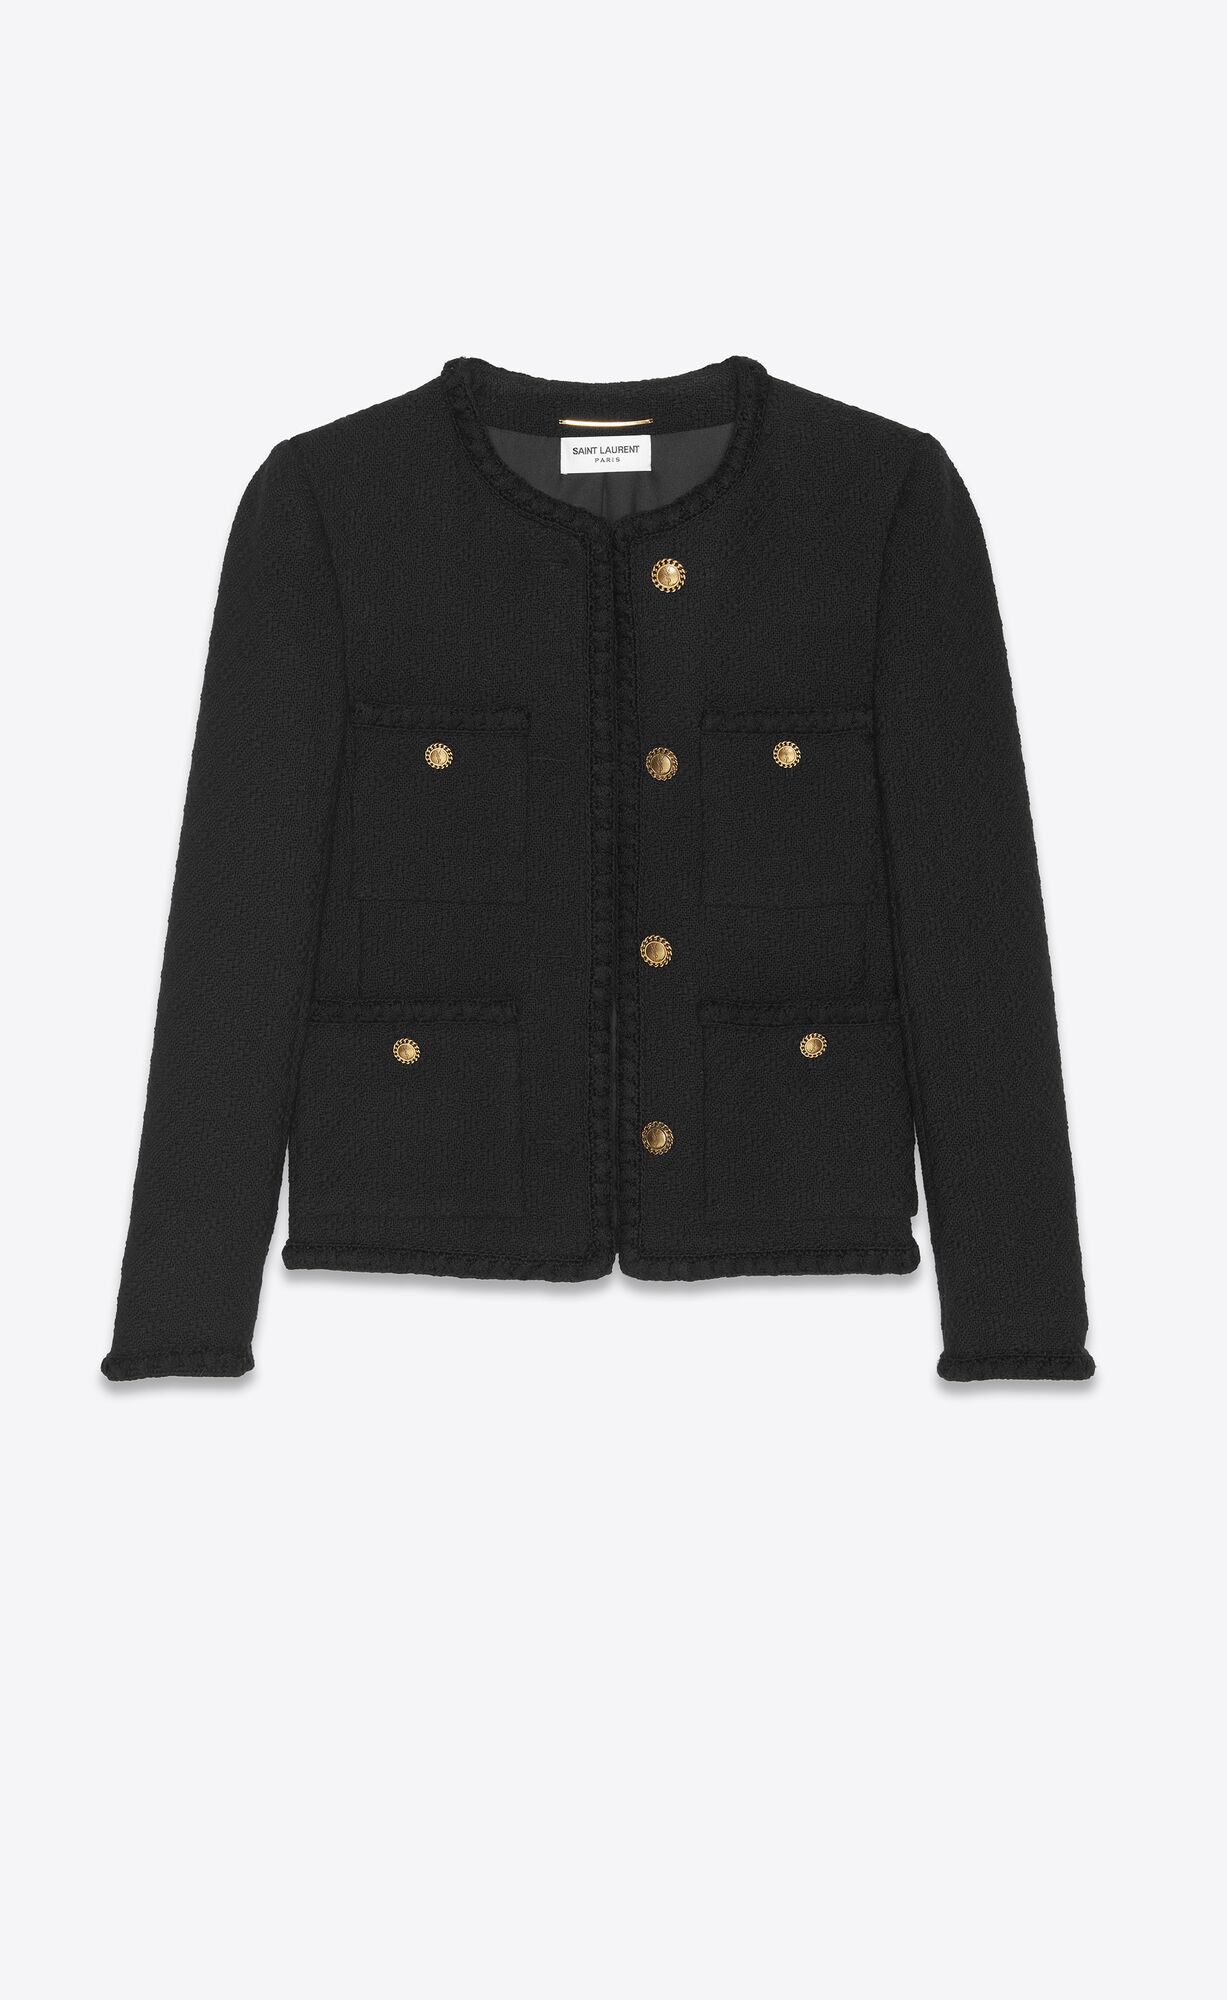 16 Tweed Jackets to Wear Fall 2023